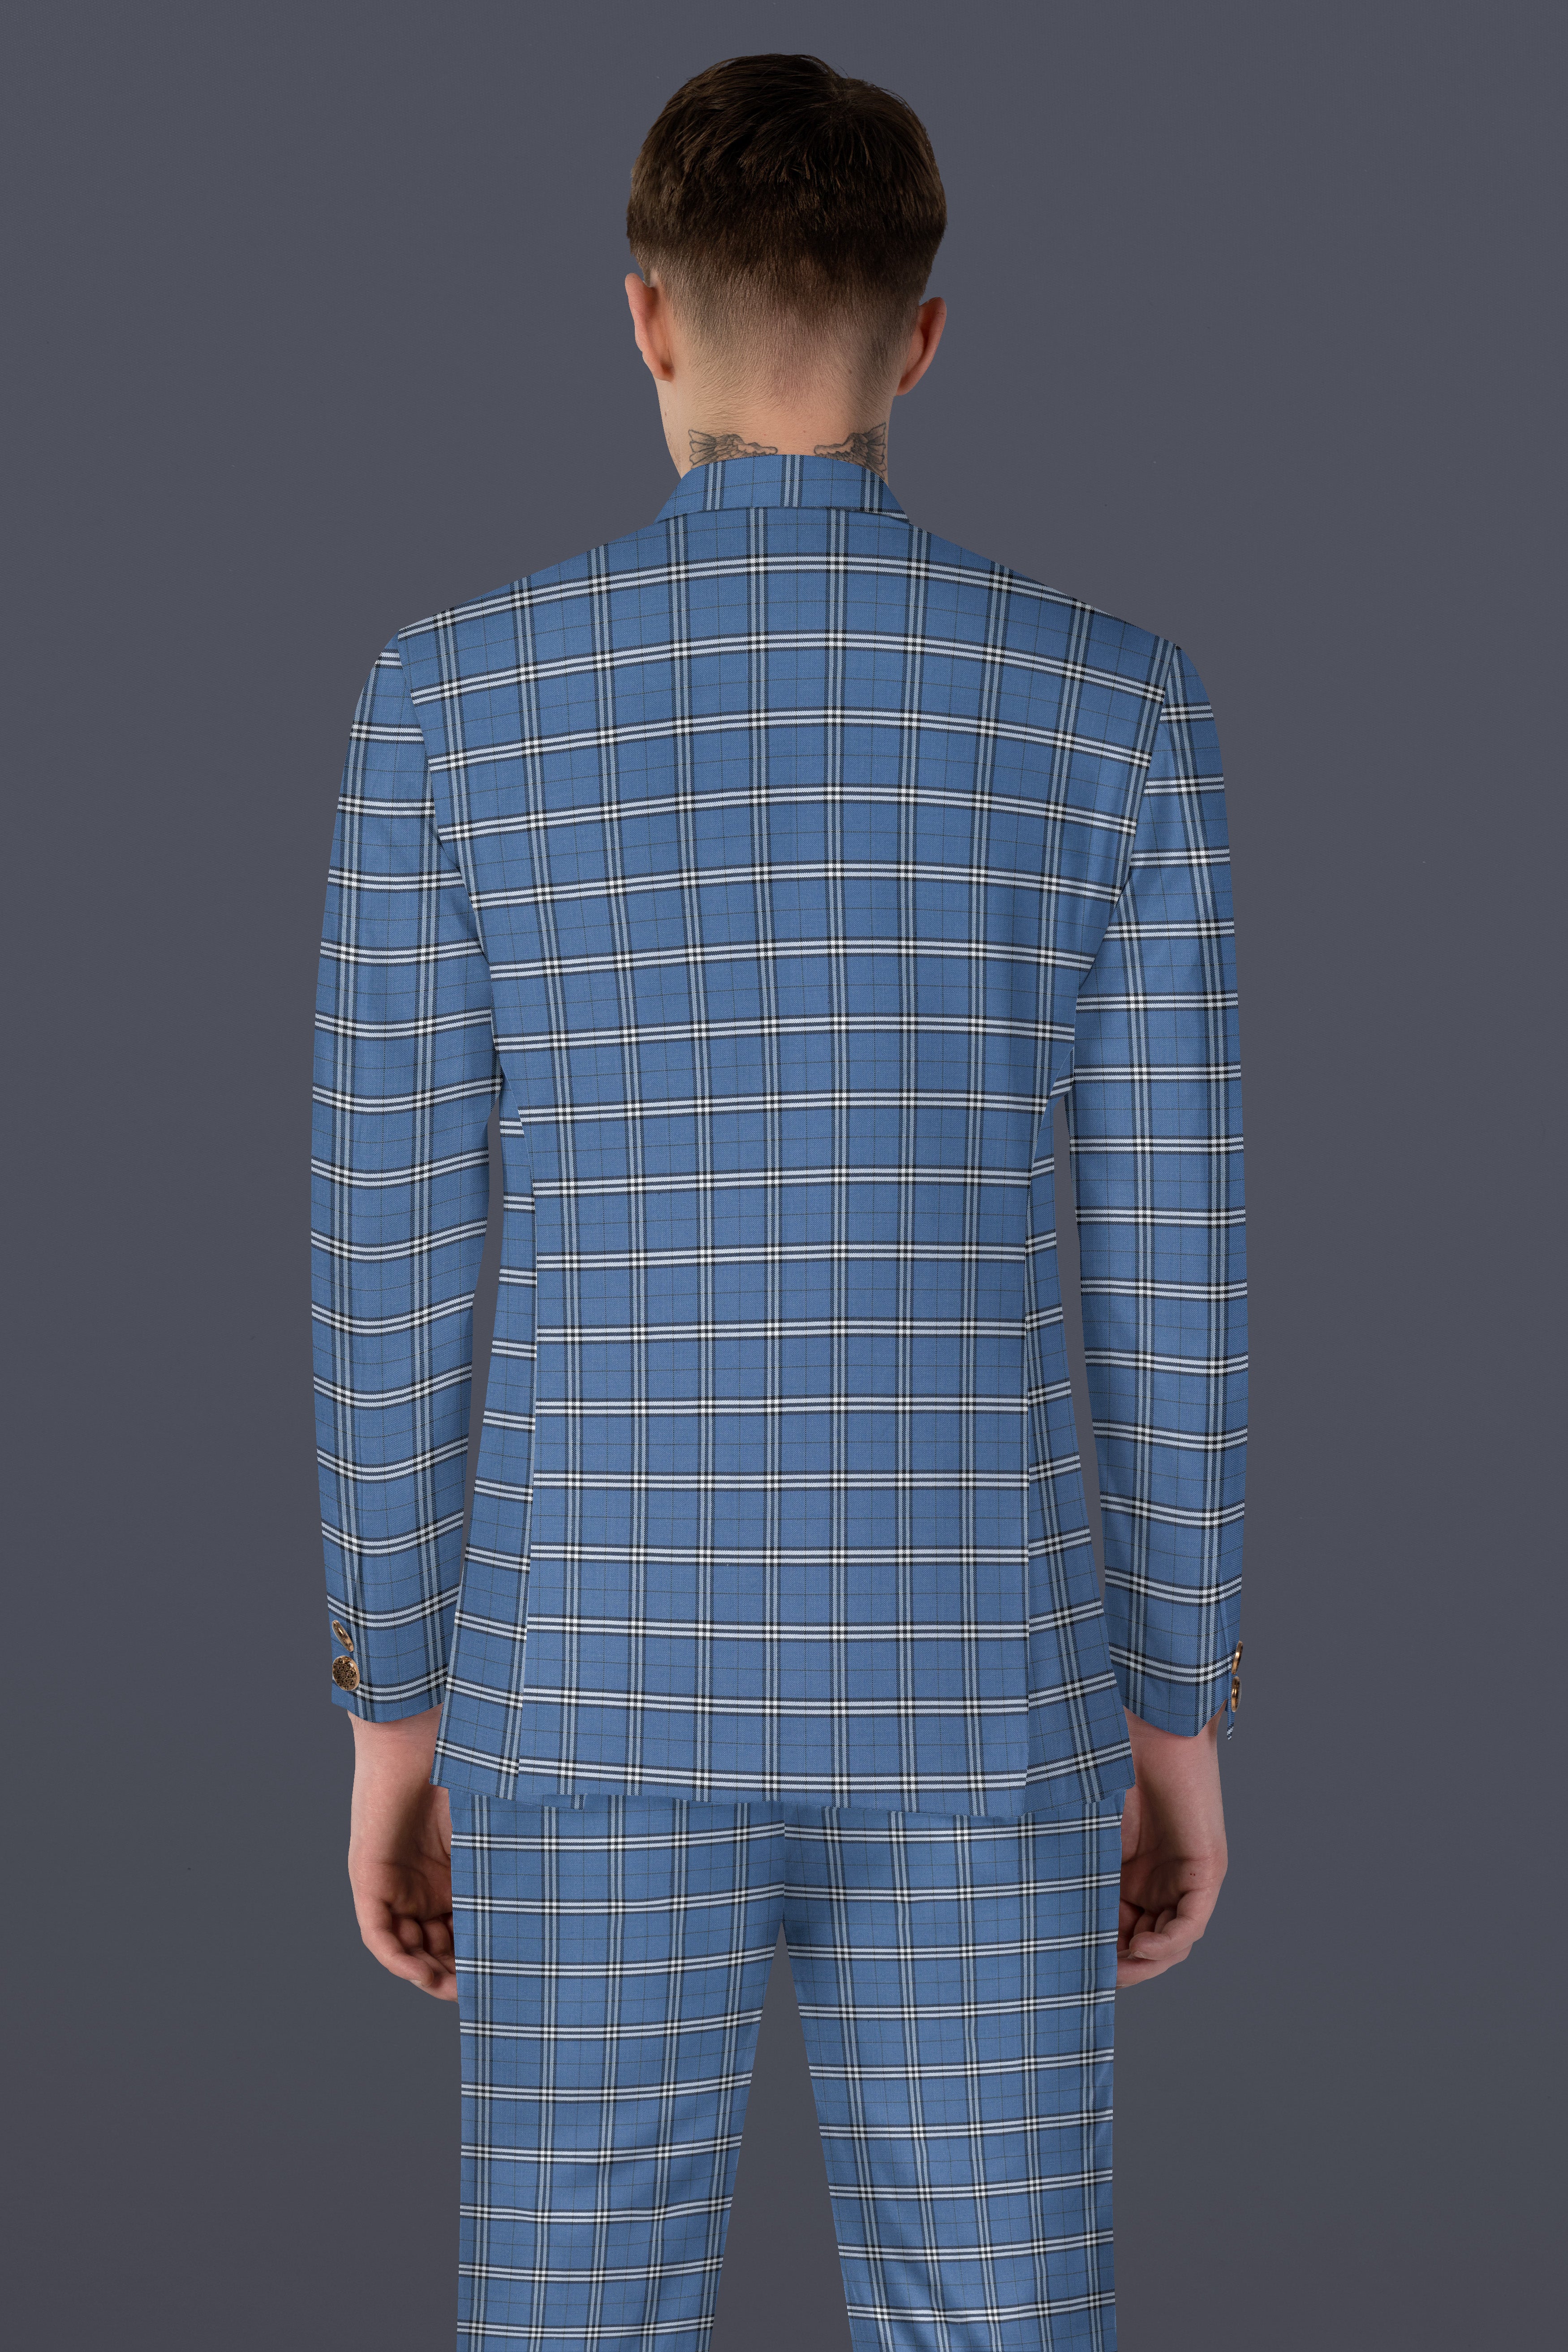 Metalic Blue Plaid Wool Blend Bandhgala Suit